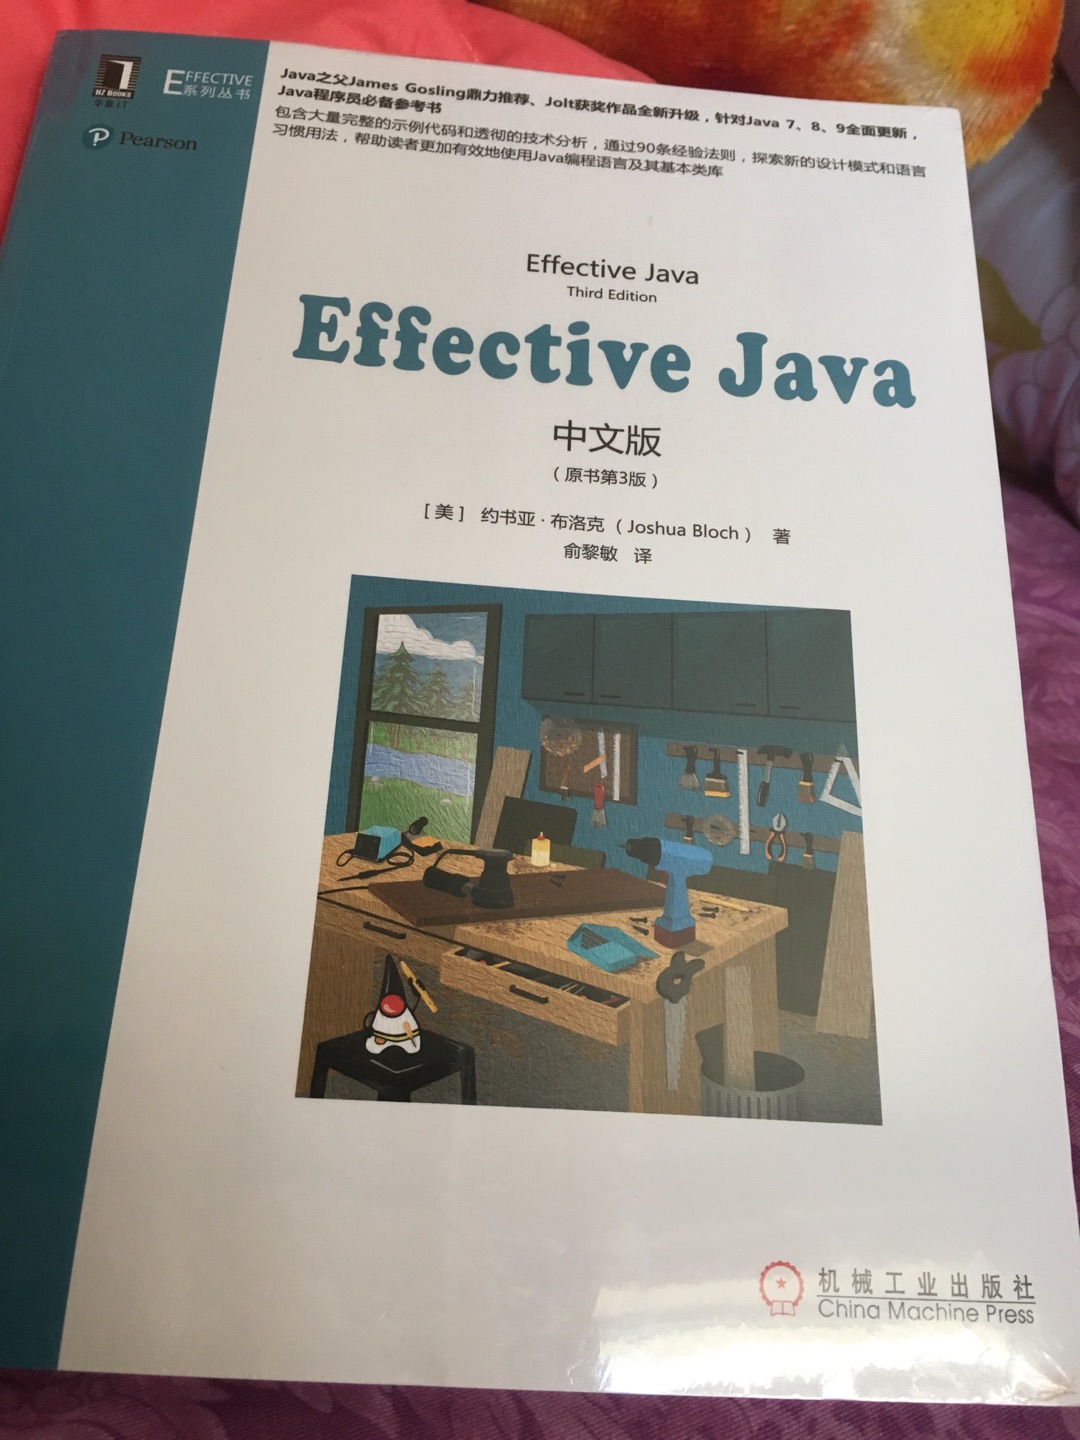 看到高效Java已经有了第三版，就打算再入手一本了，正巧最近读书节，果断下了单。作为老读者，非常推崇作者深入浅出的讲解和对面向对象的极致理解，每一个实例都是无数经验的总结，推荐每一位Java读者手边备一本。